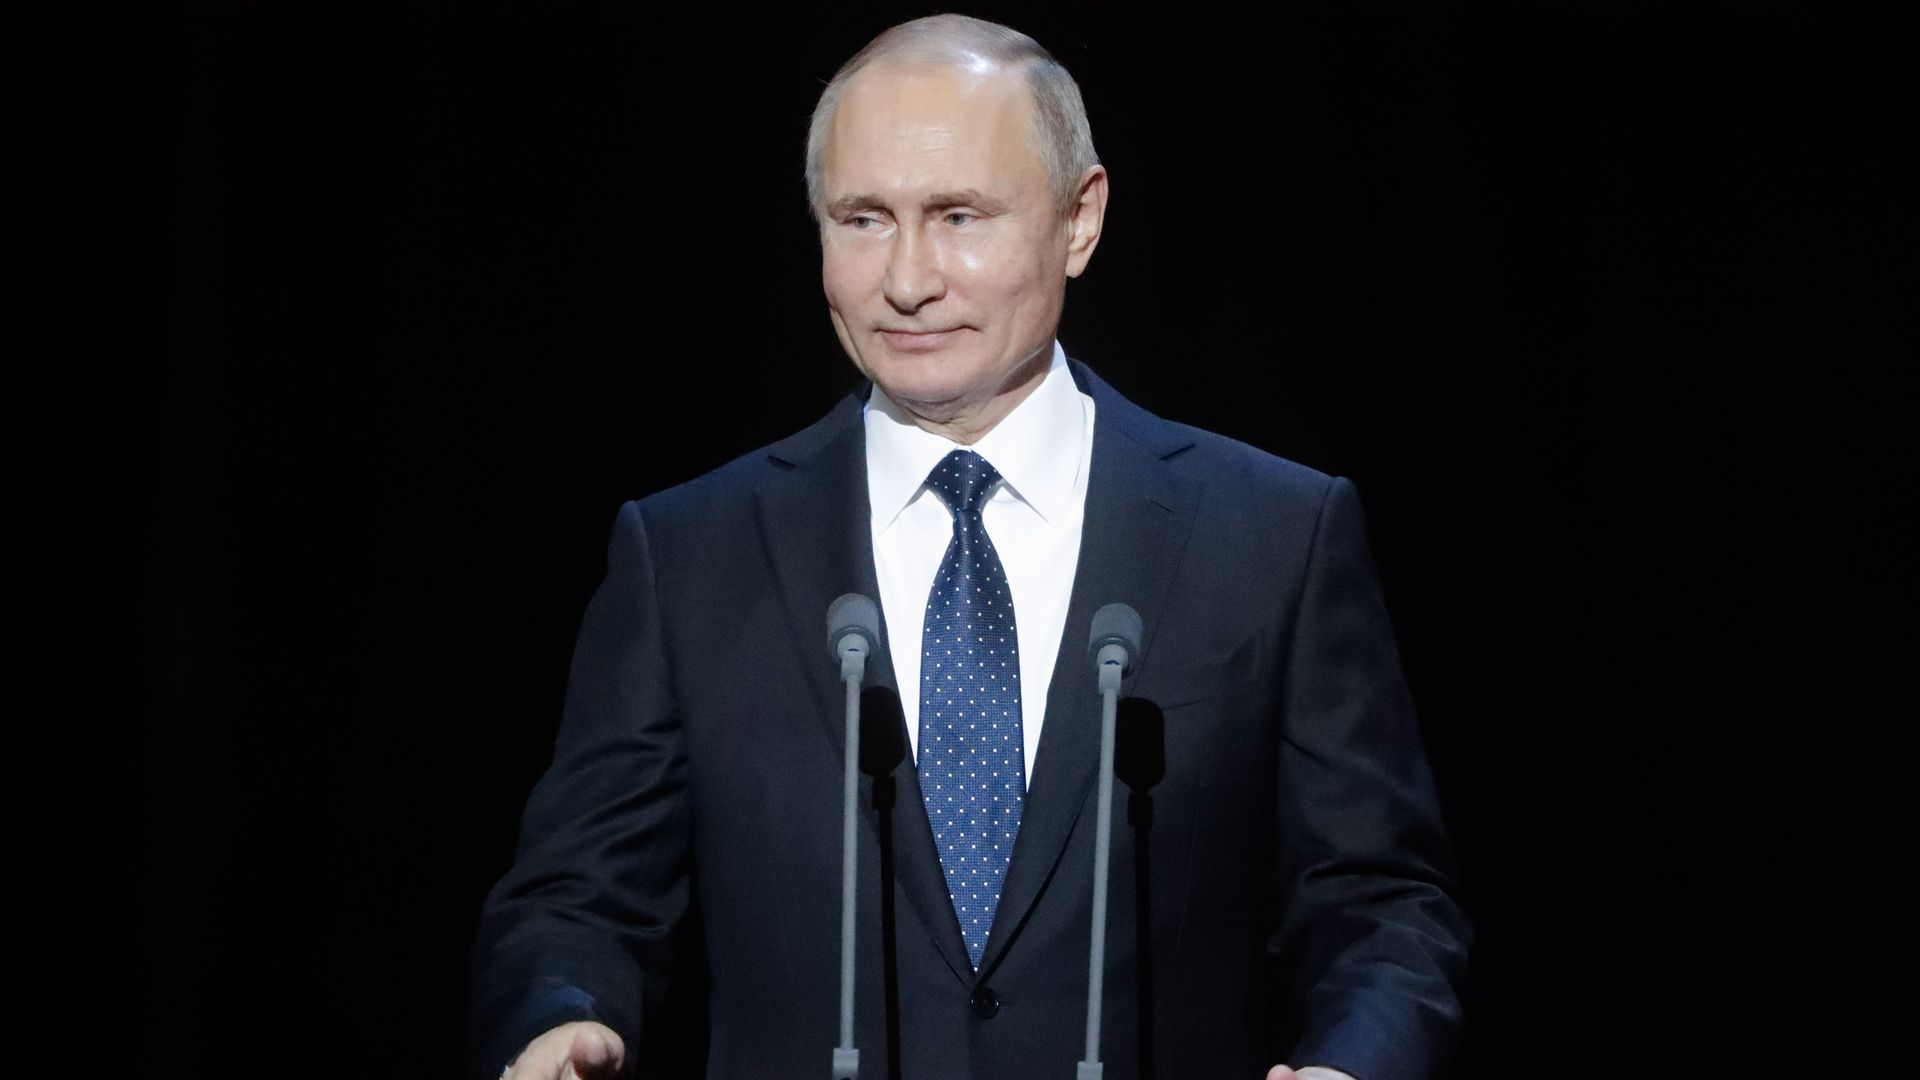 Vladimir Putin at podium smiling.